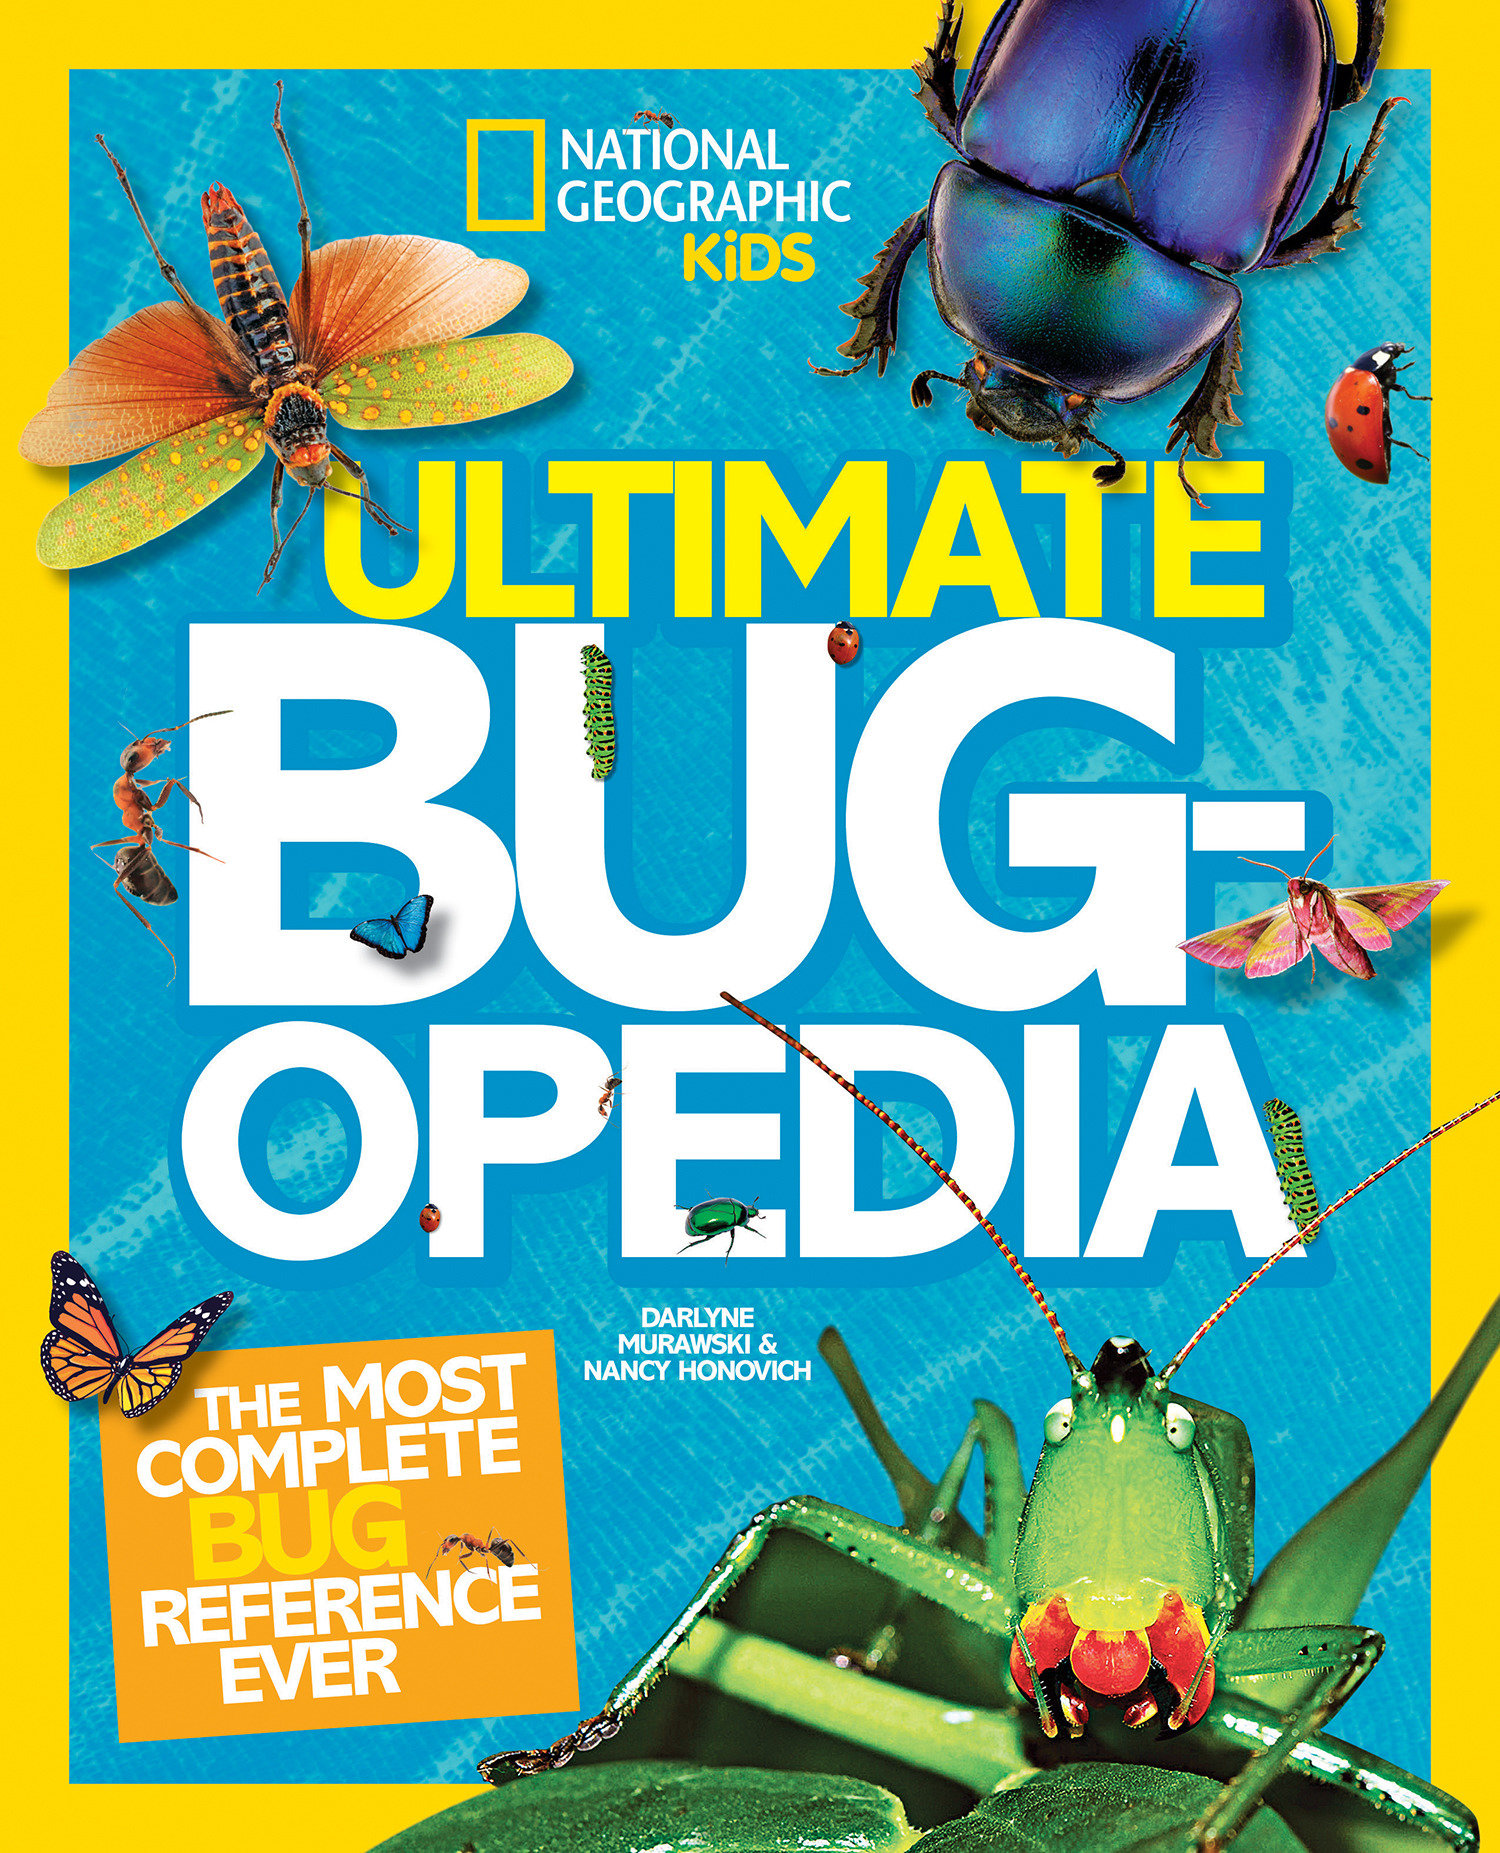 Ultimate Bug-Opedia